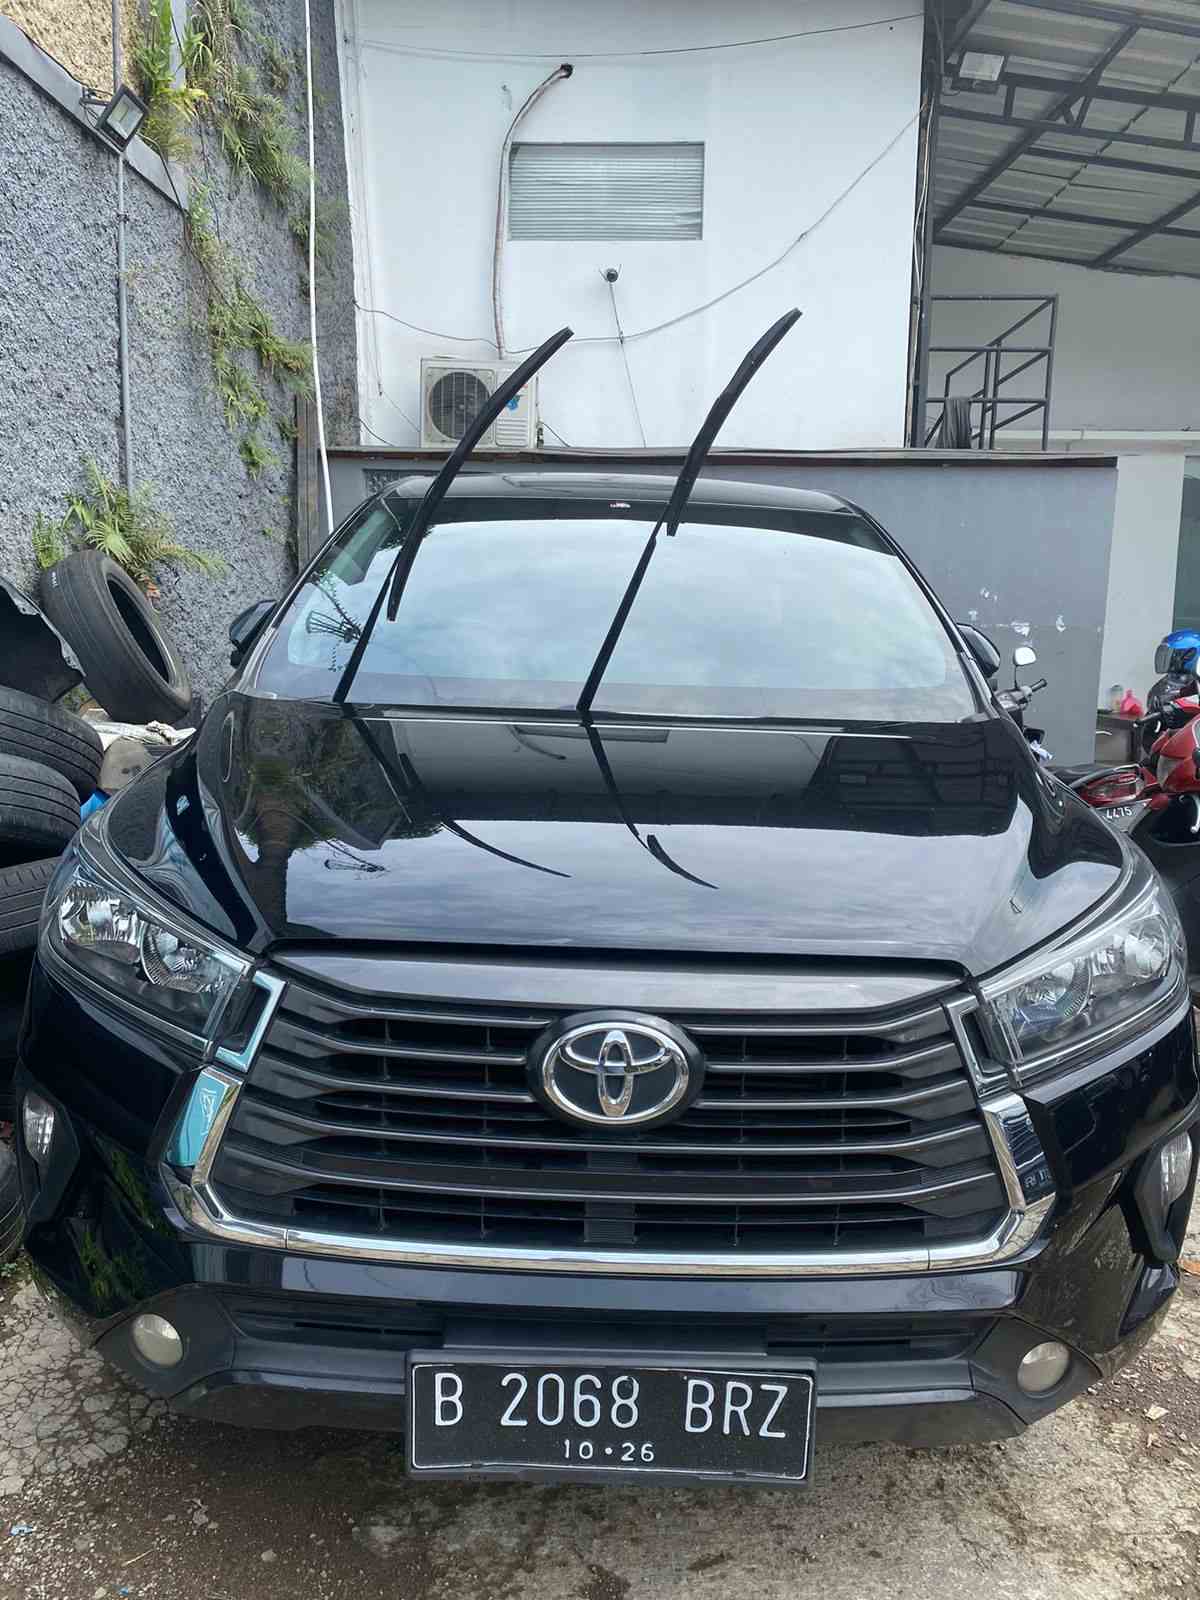 Harga Sewa Mobil Avanza Di Semarang